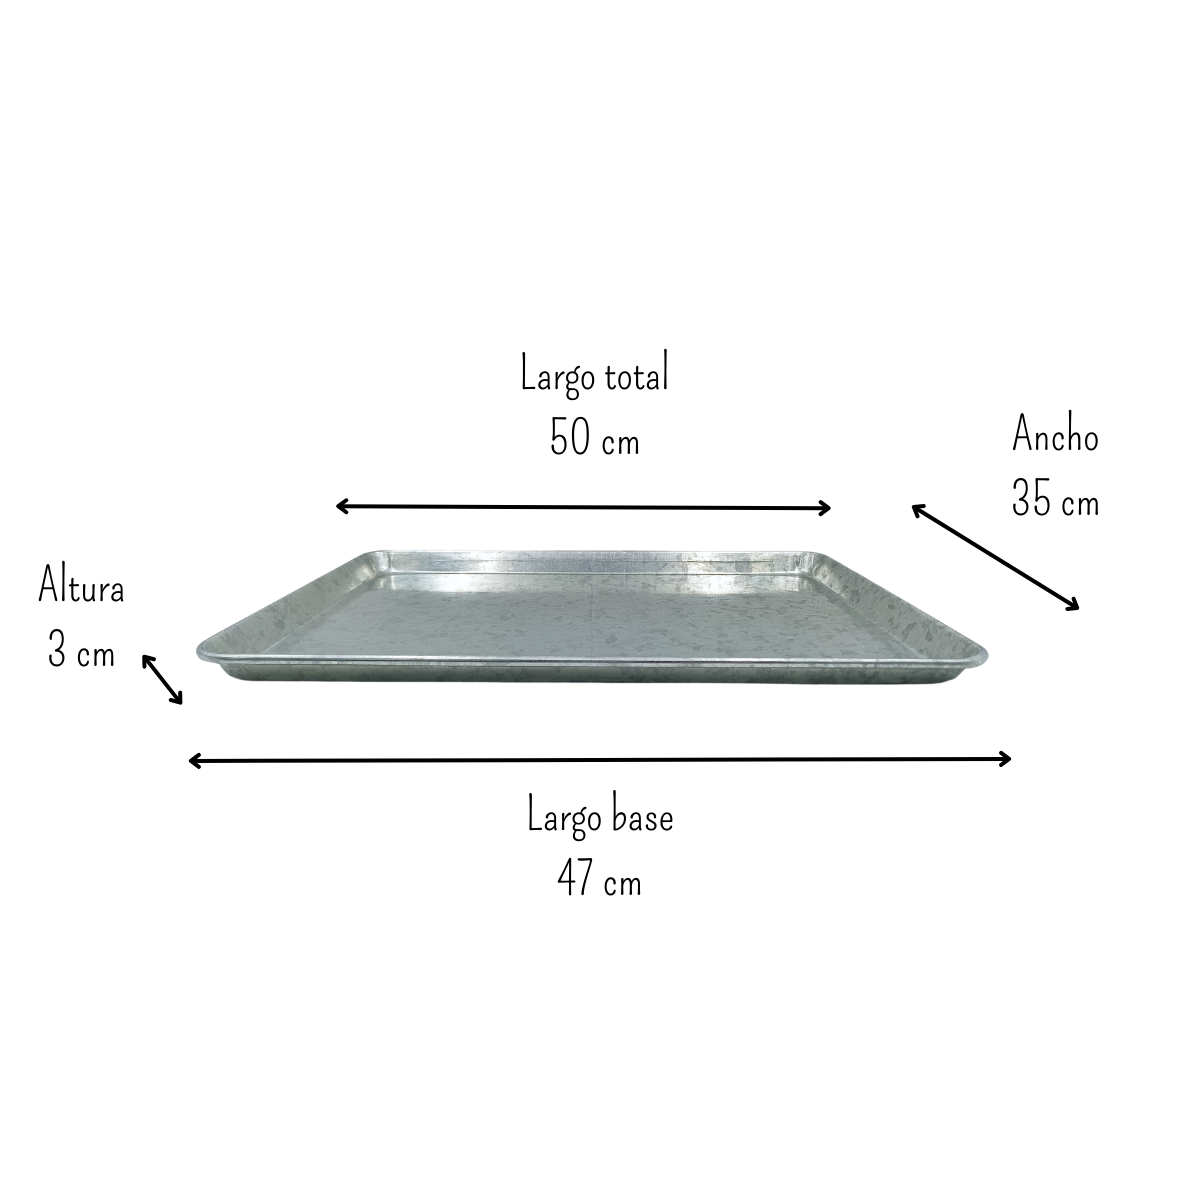 Charola para hornear de aluminio 35 cm x50 cms generica usad